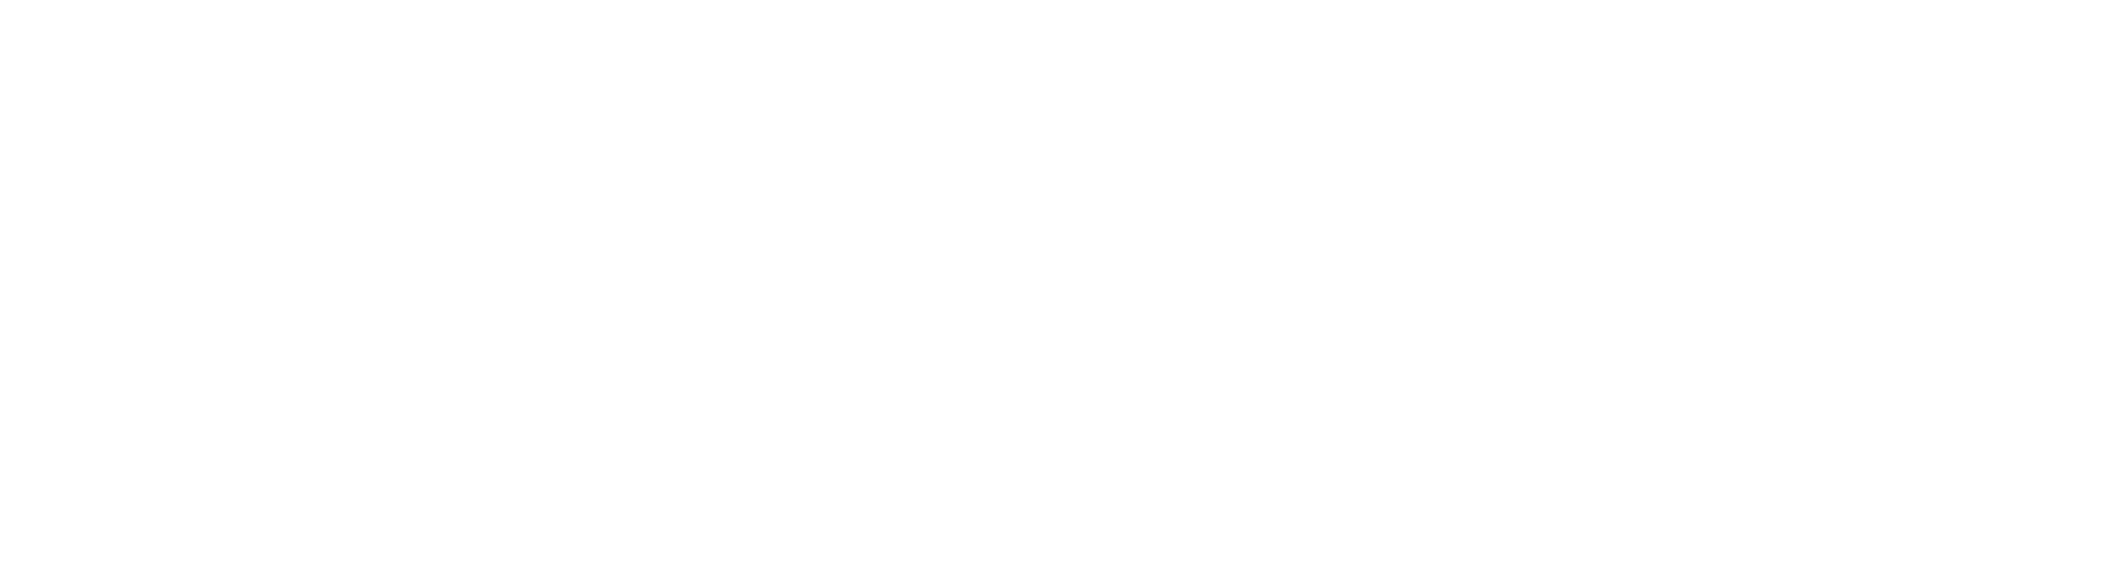 Bell Collier Village Logo White